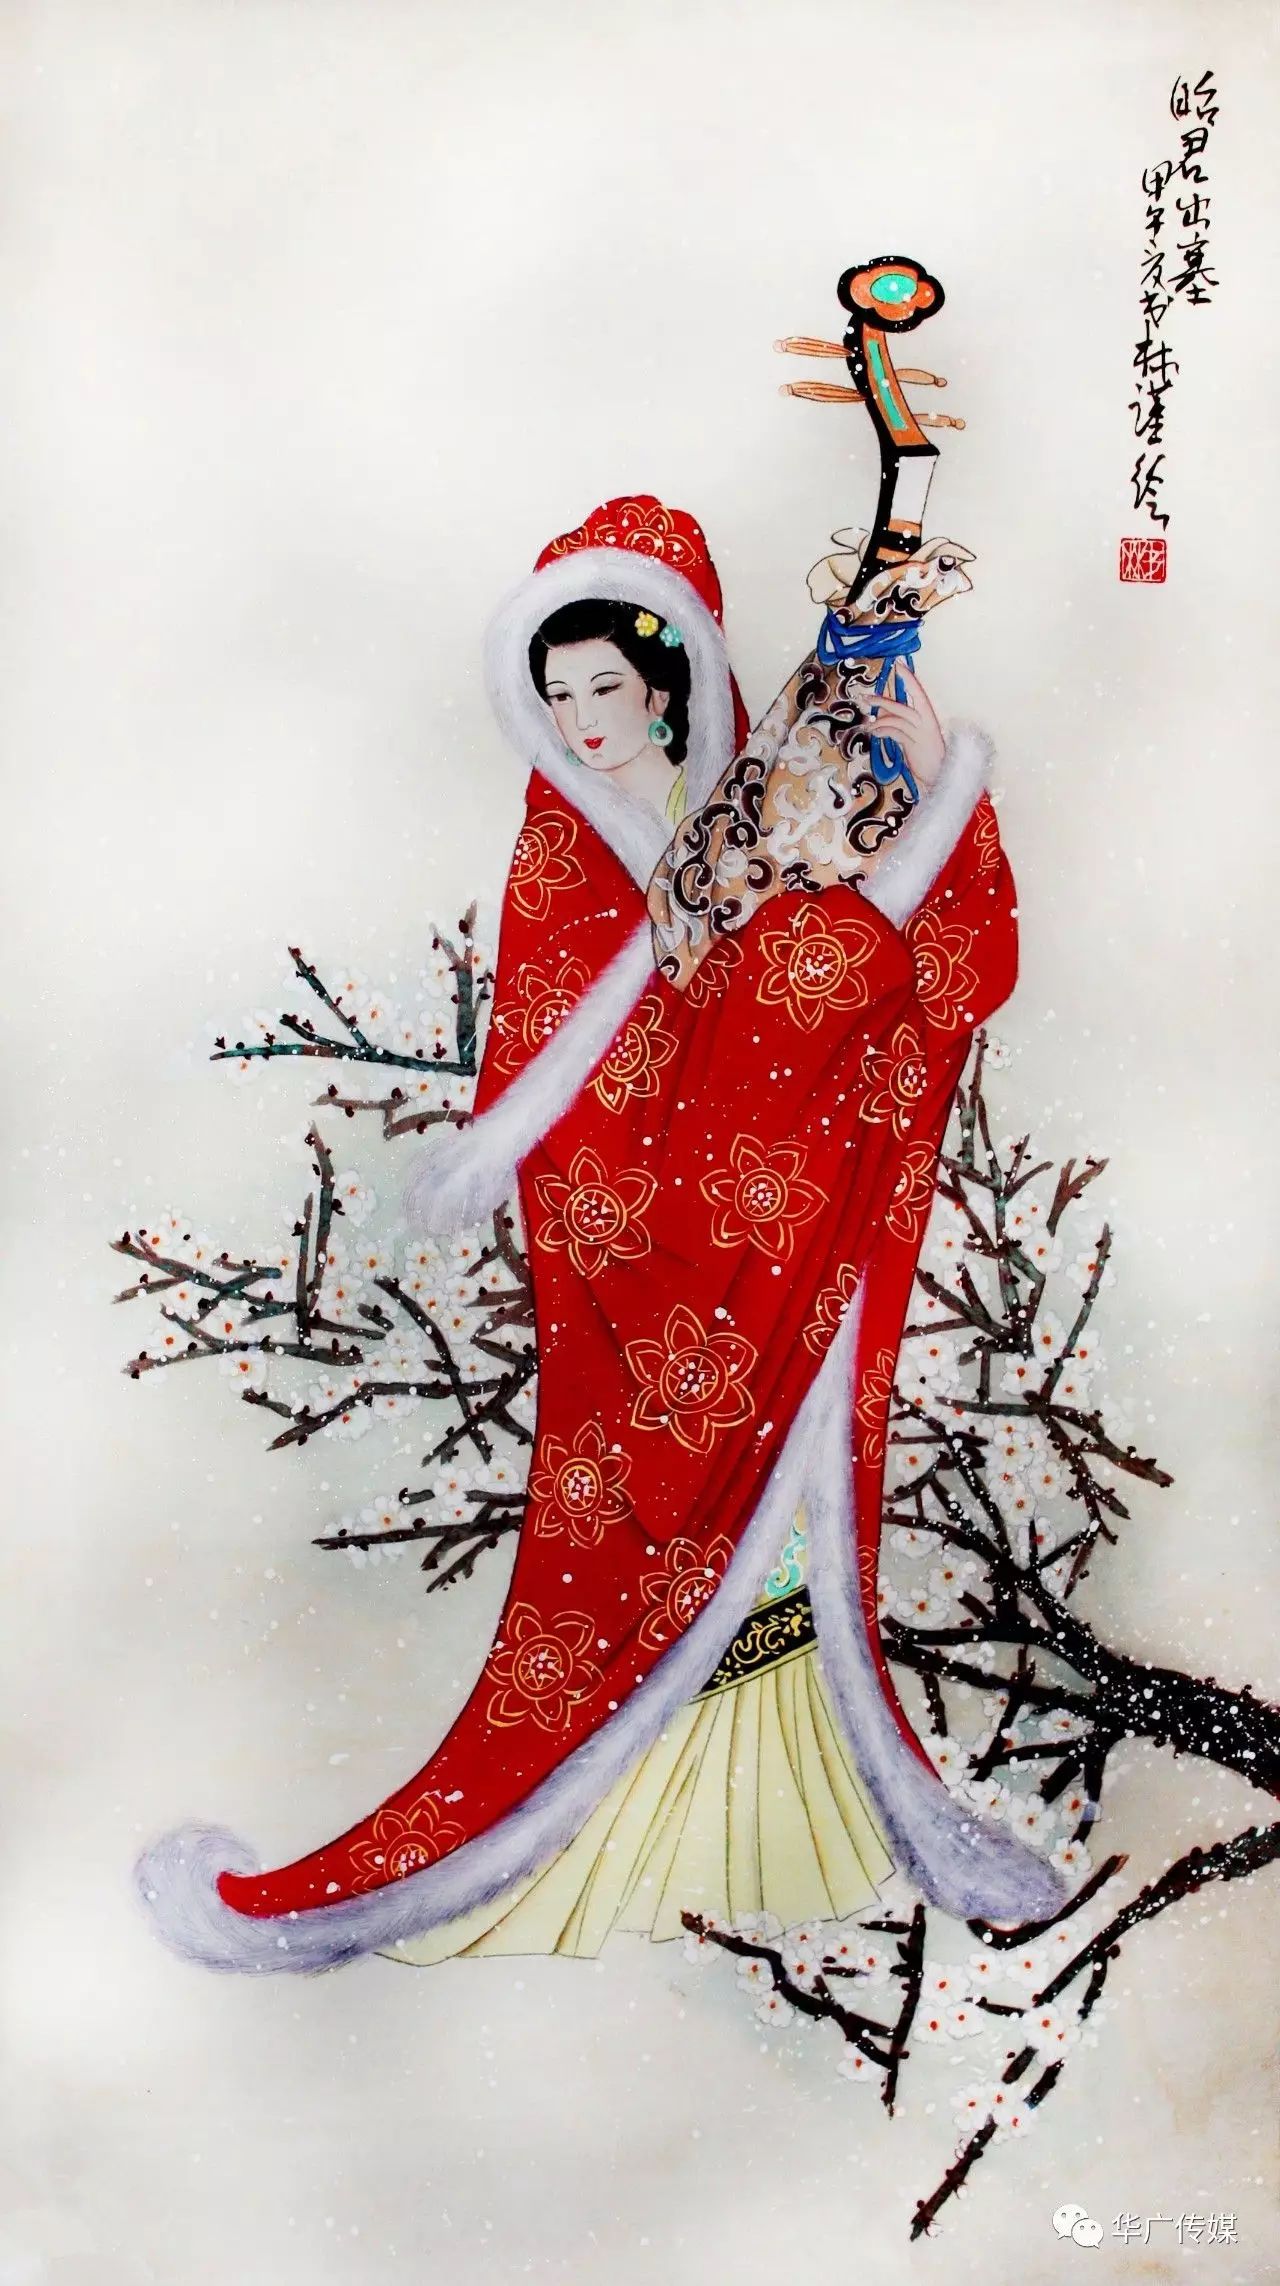 落雁王昭君是古代著名的美女,人们多用沉鱼落雁来作为美女的代称.